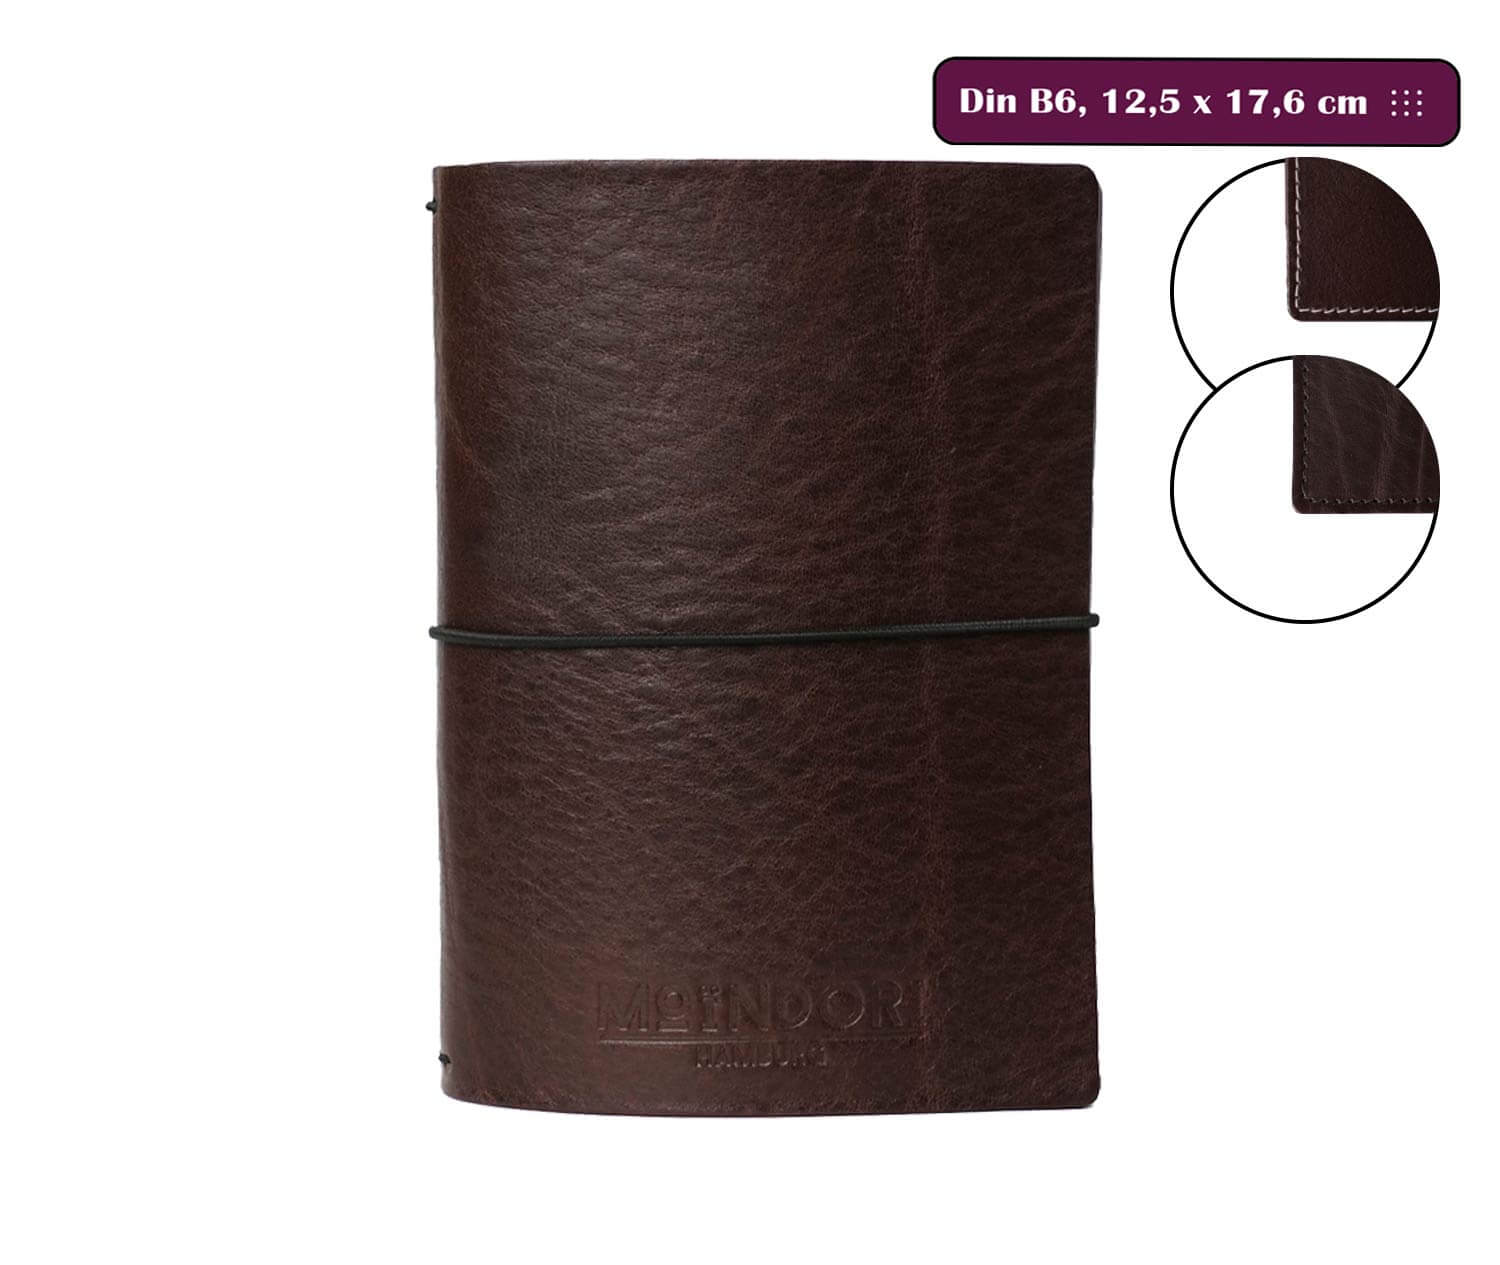 DIN B6 Travelers Notebook - inkl. 2 Heftinlets, 3,5mm Echtleder